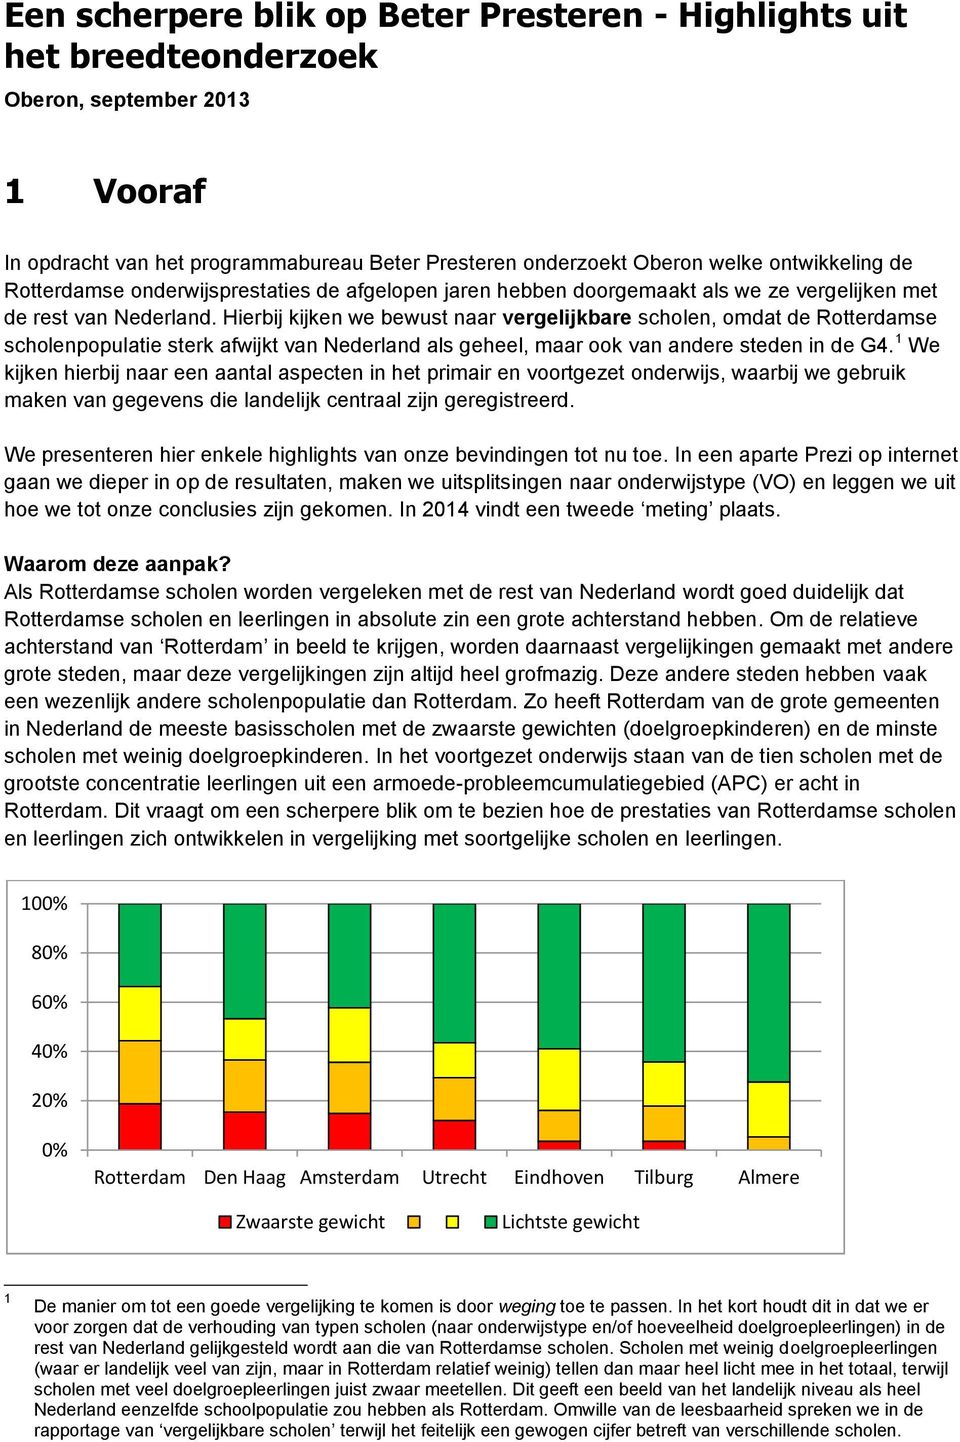 Hierbij kijken we bewust naar vergelijkbare scholen, omdat de se scholenpopulatie sterk afwijkt van Nederland als geheel, maar ook van andere steden in de G4.